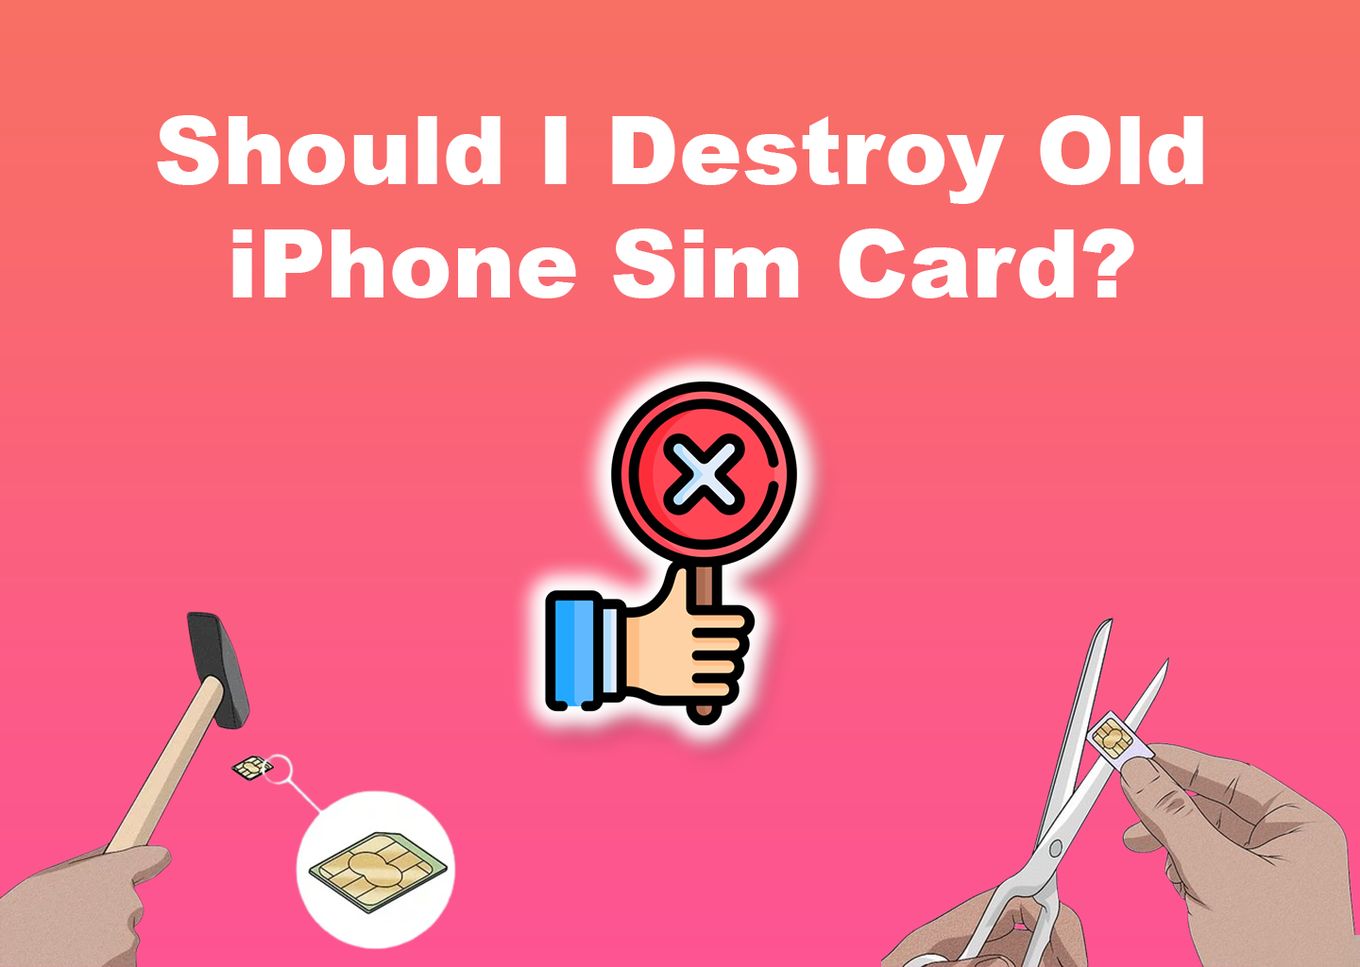 Should I Destroy Old iPhone SIM Card?